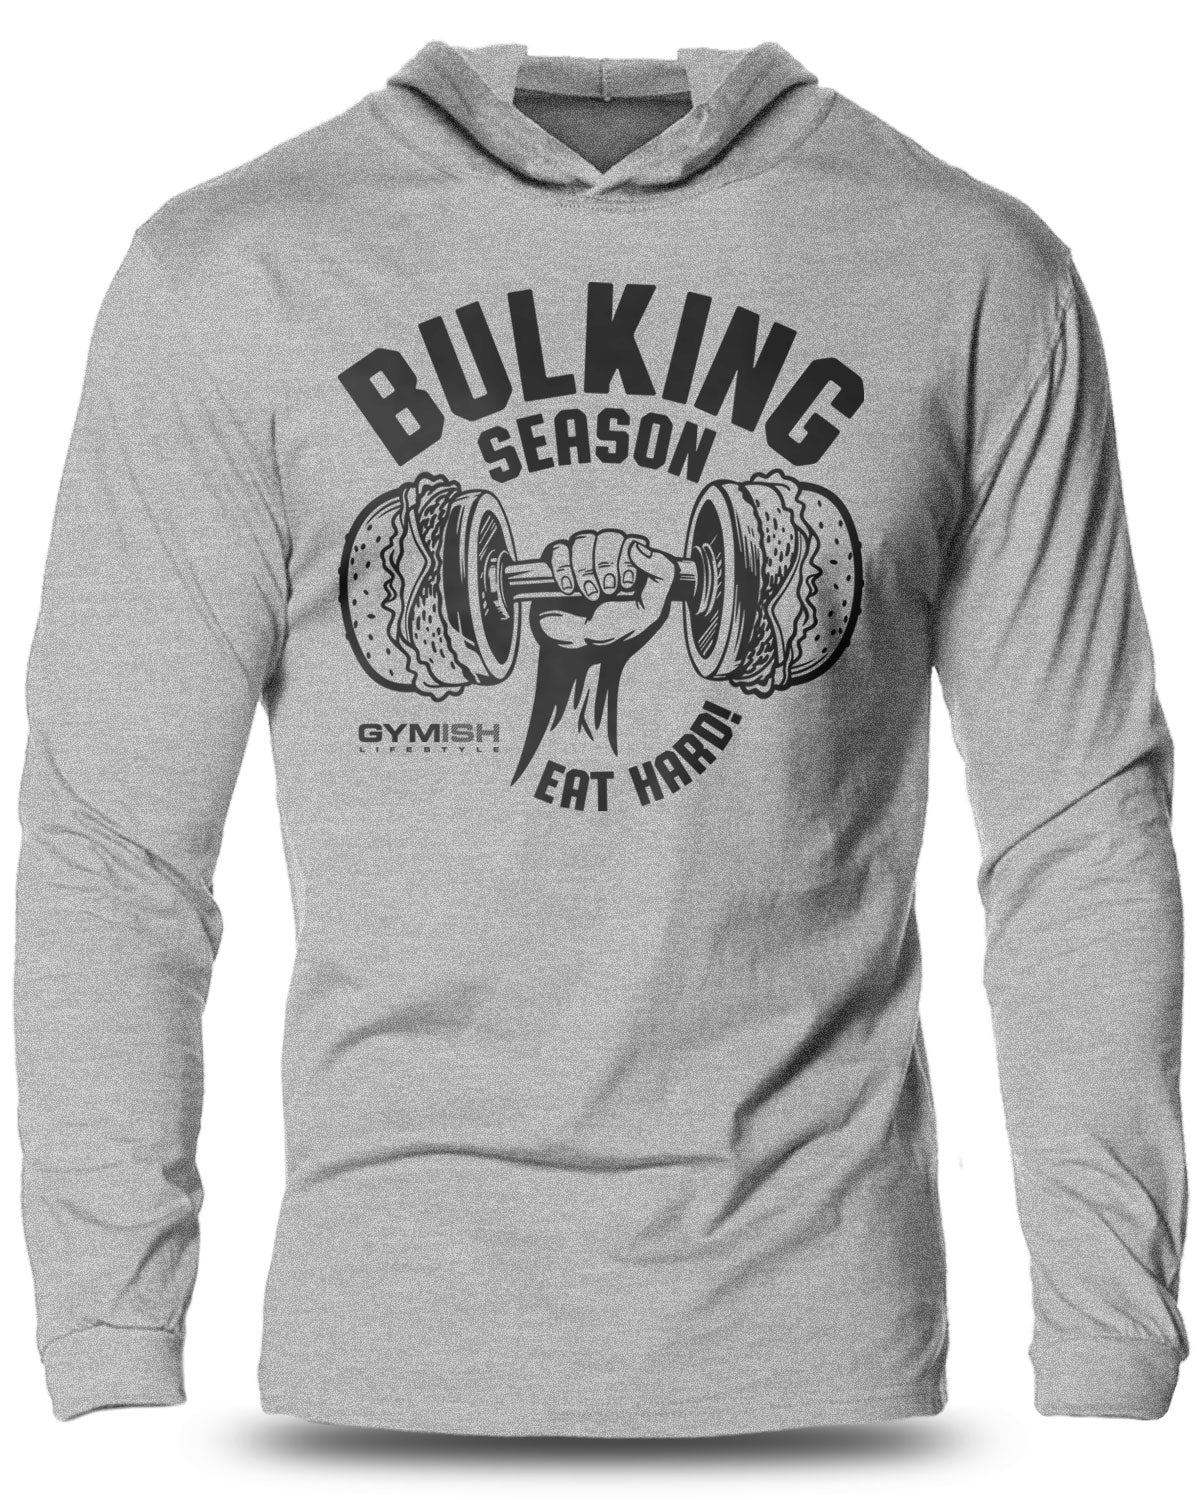 070- Bulking Season V2 Lightweight Long Sleeve Hooded T-shirt for Men